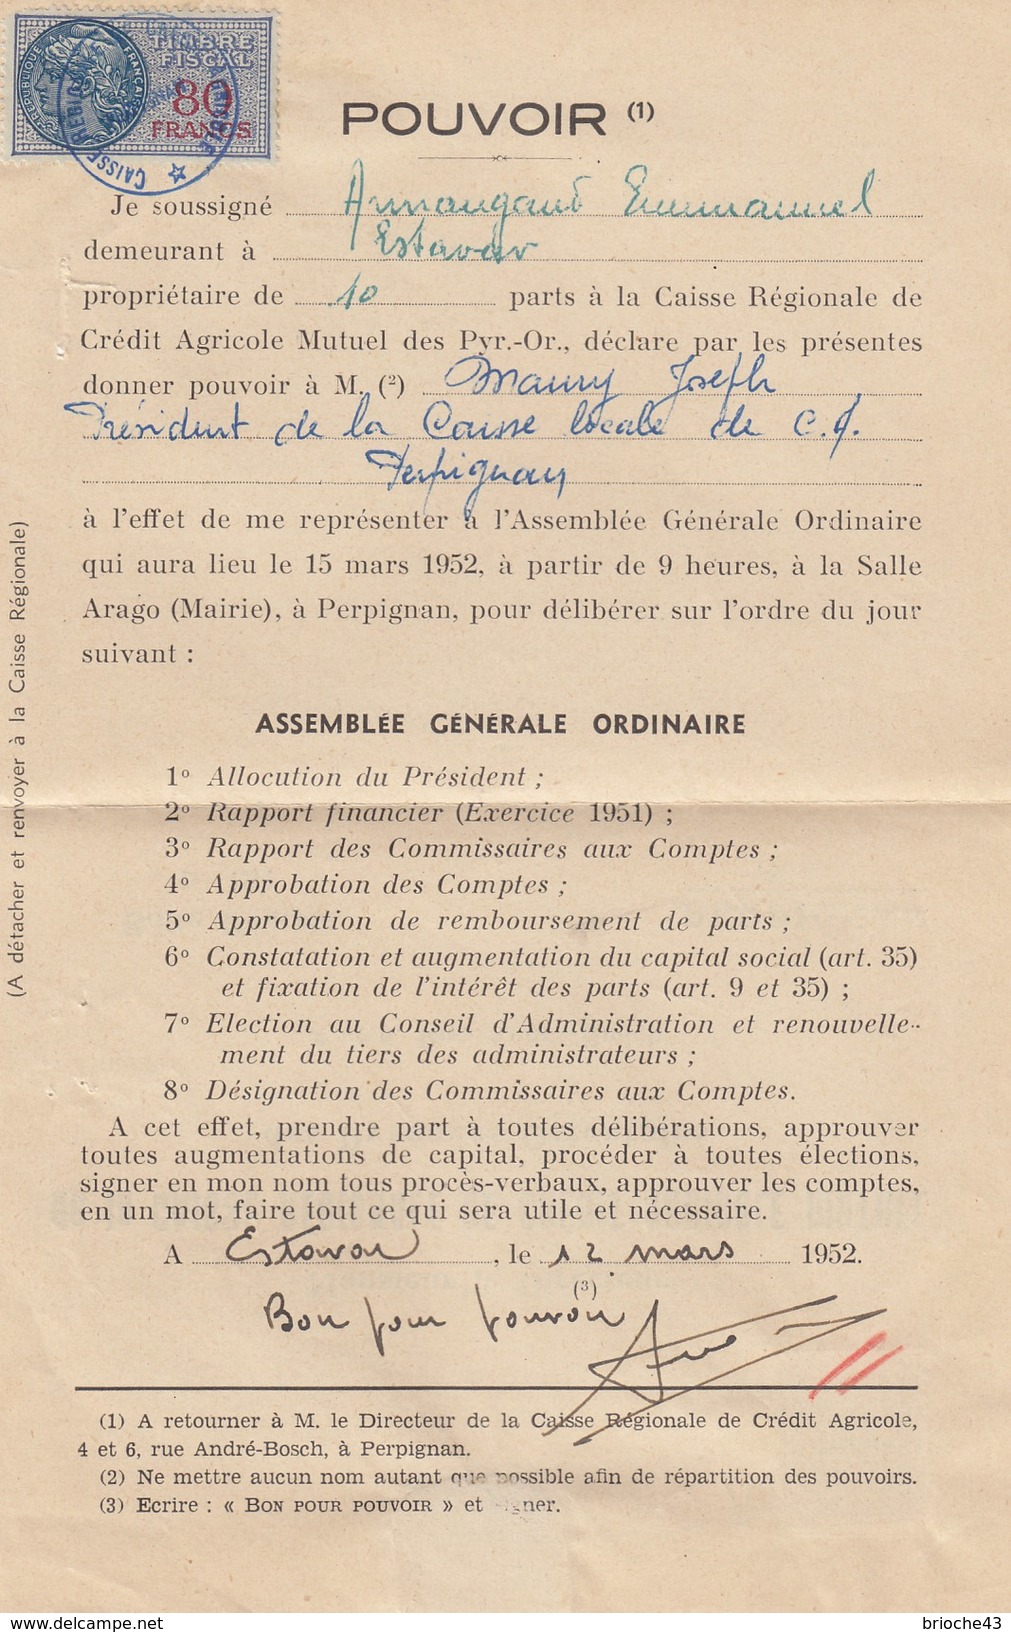 1952 POUVOIR CAISSE RÉGIONALE CRÉDIT AGRICOLE MUTUEL PYRENEES-ORIENTALES -T. FISCAL 80F - /1 - Briefe U. Dokumente